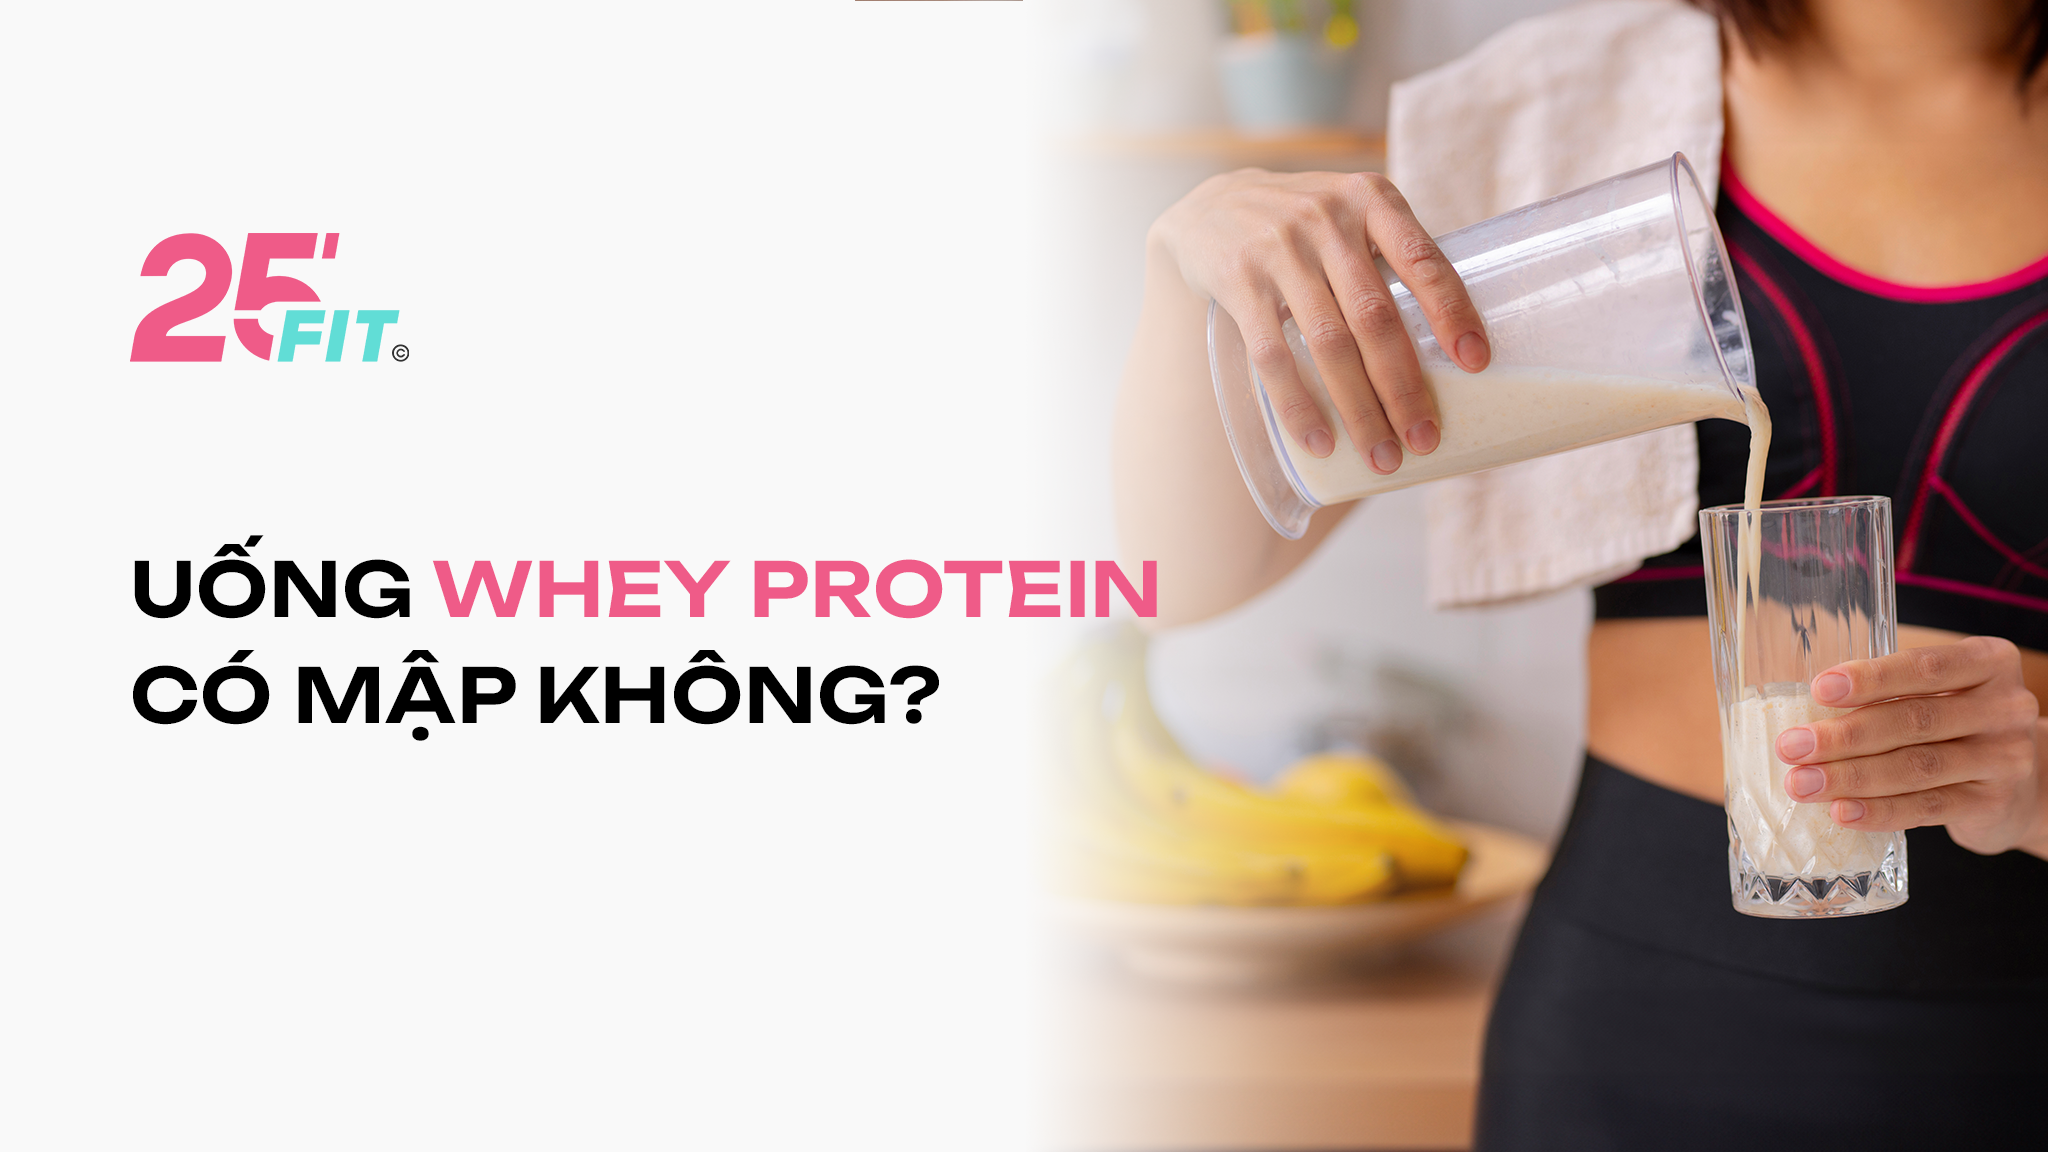 Uống whey protein có mập không?